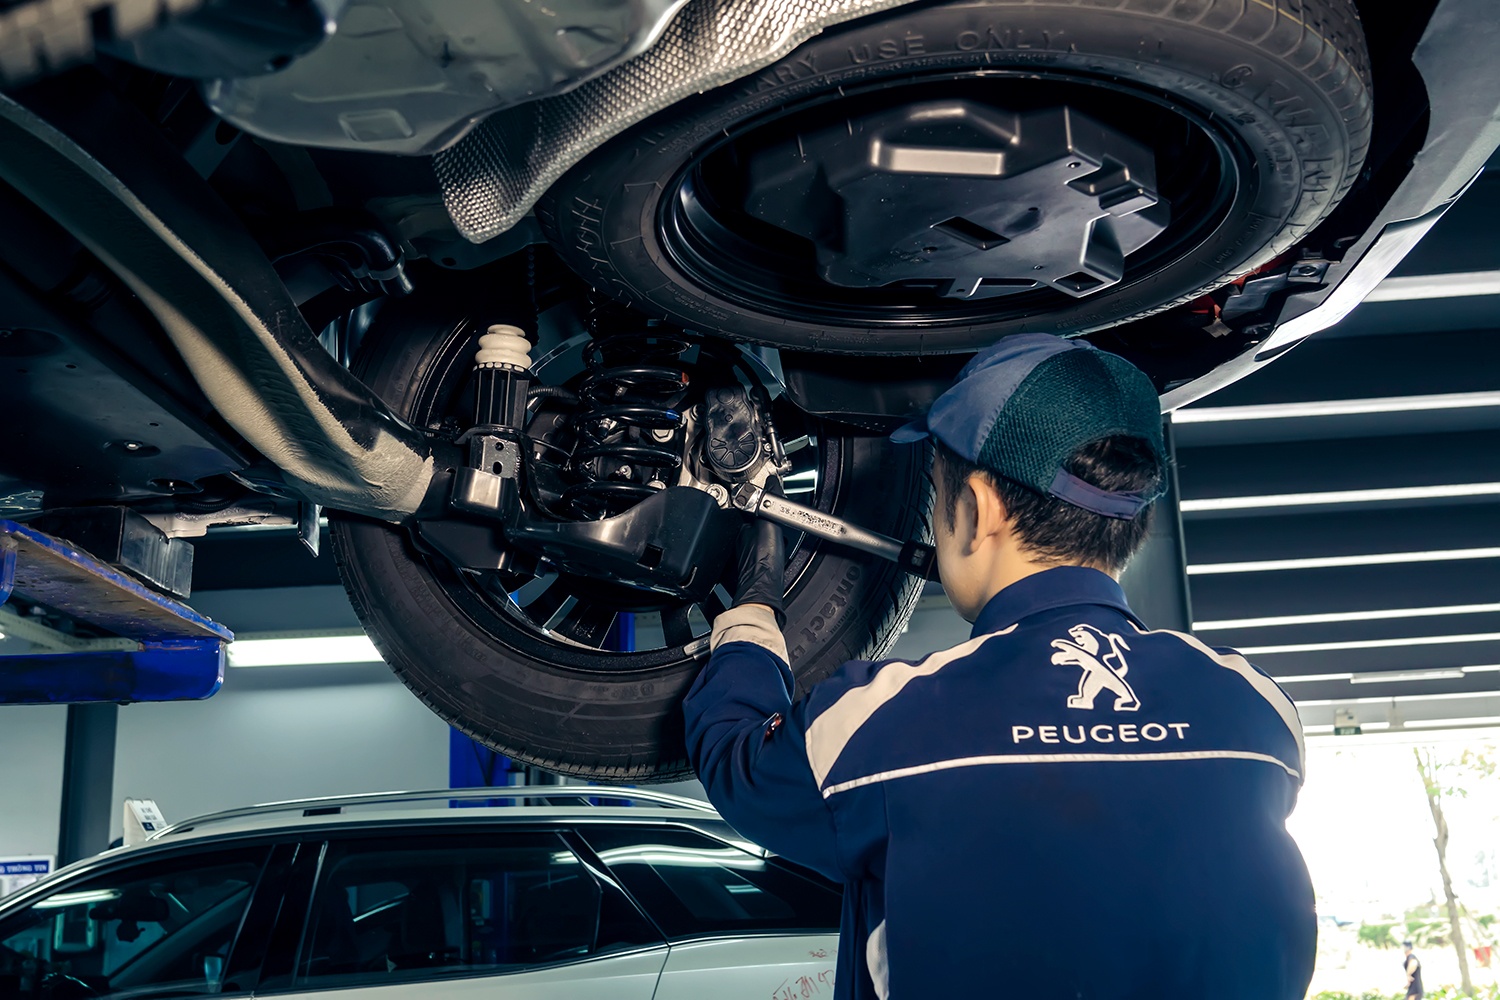 An tâm và tiết kiệm với dịch vụ bảo hành chính hãng 5 năm của Peugeot - ảnh 3